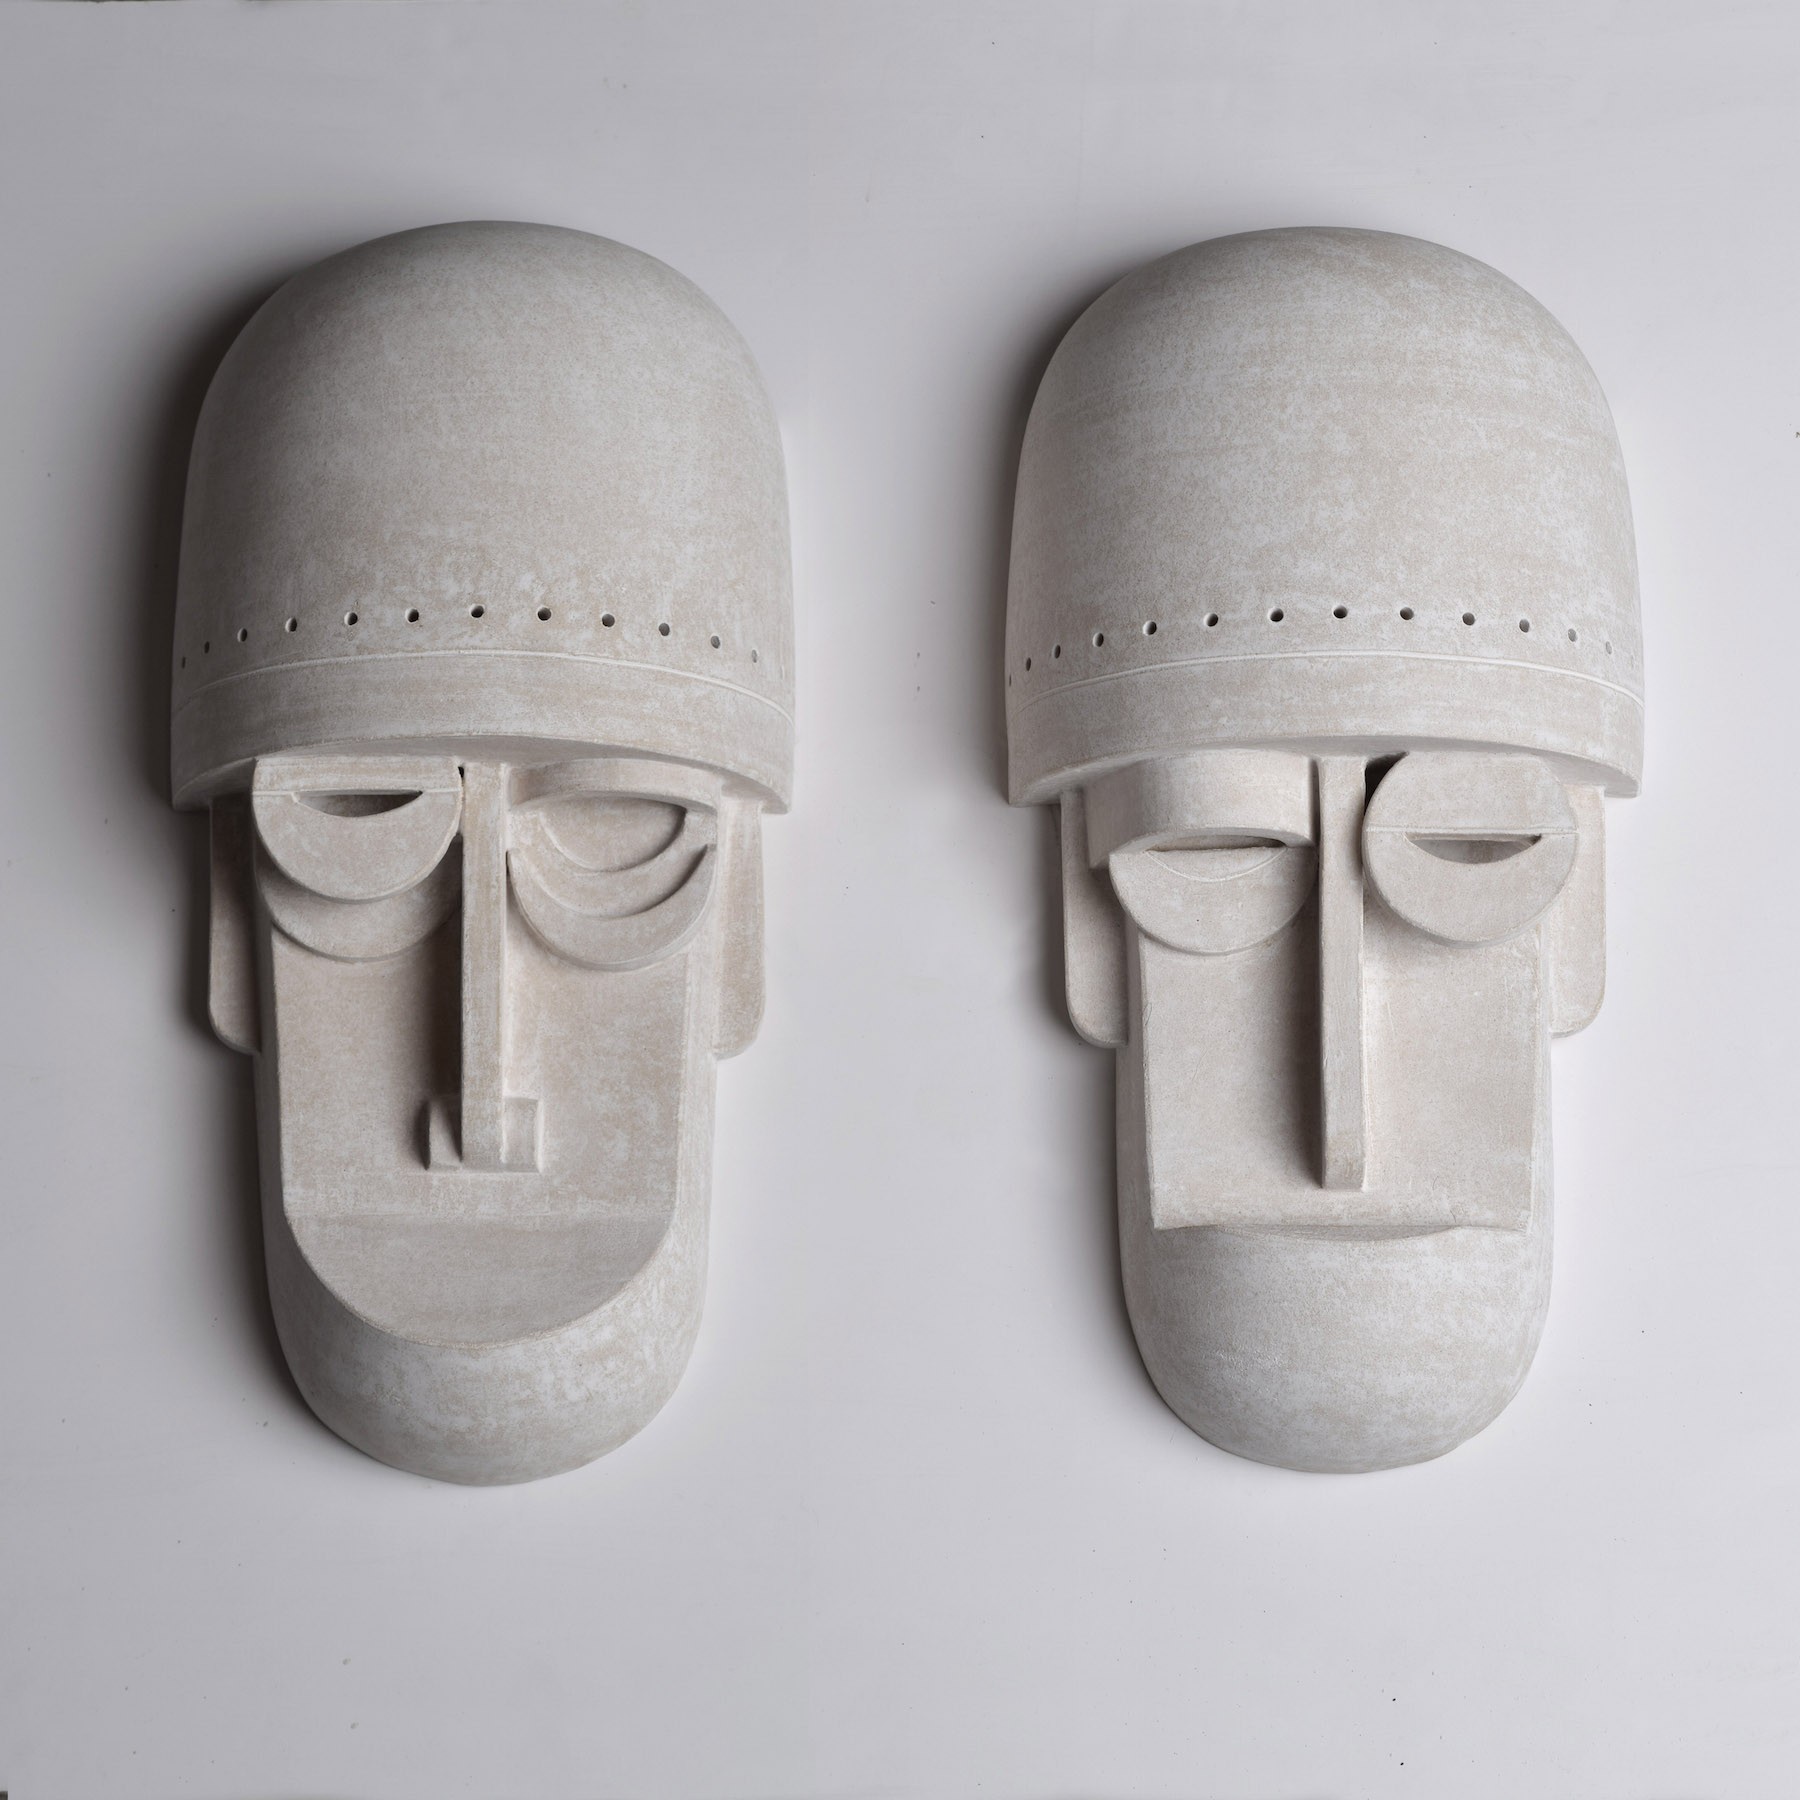 eric-roinestad-ceramic-masks-1a.jpg